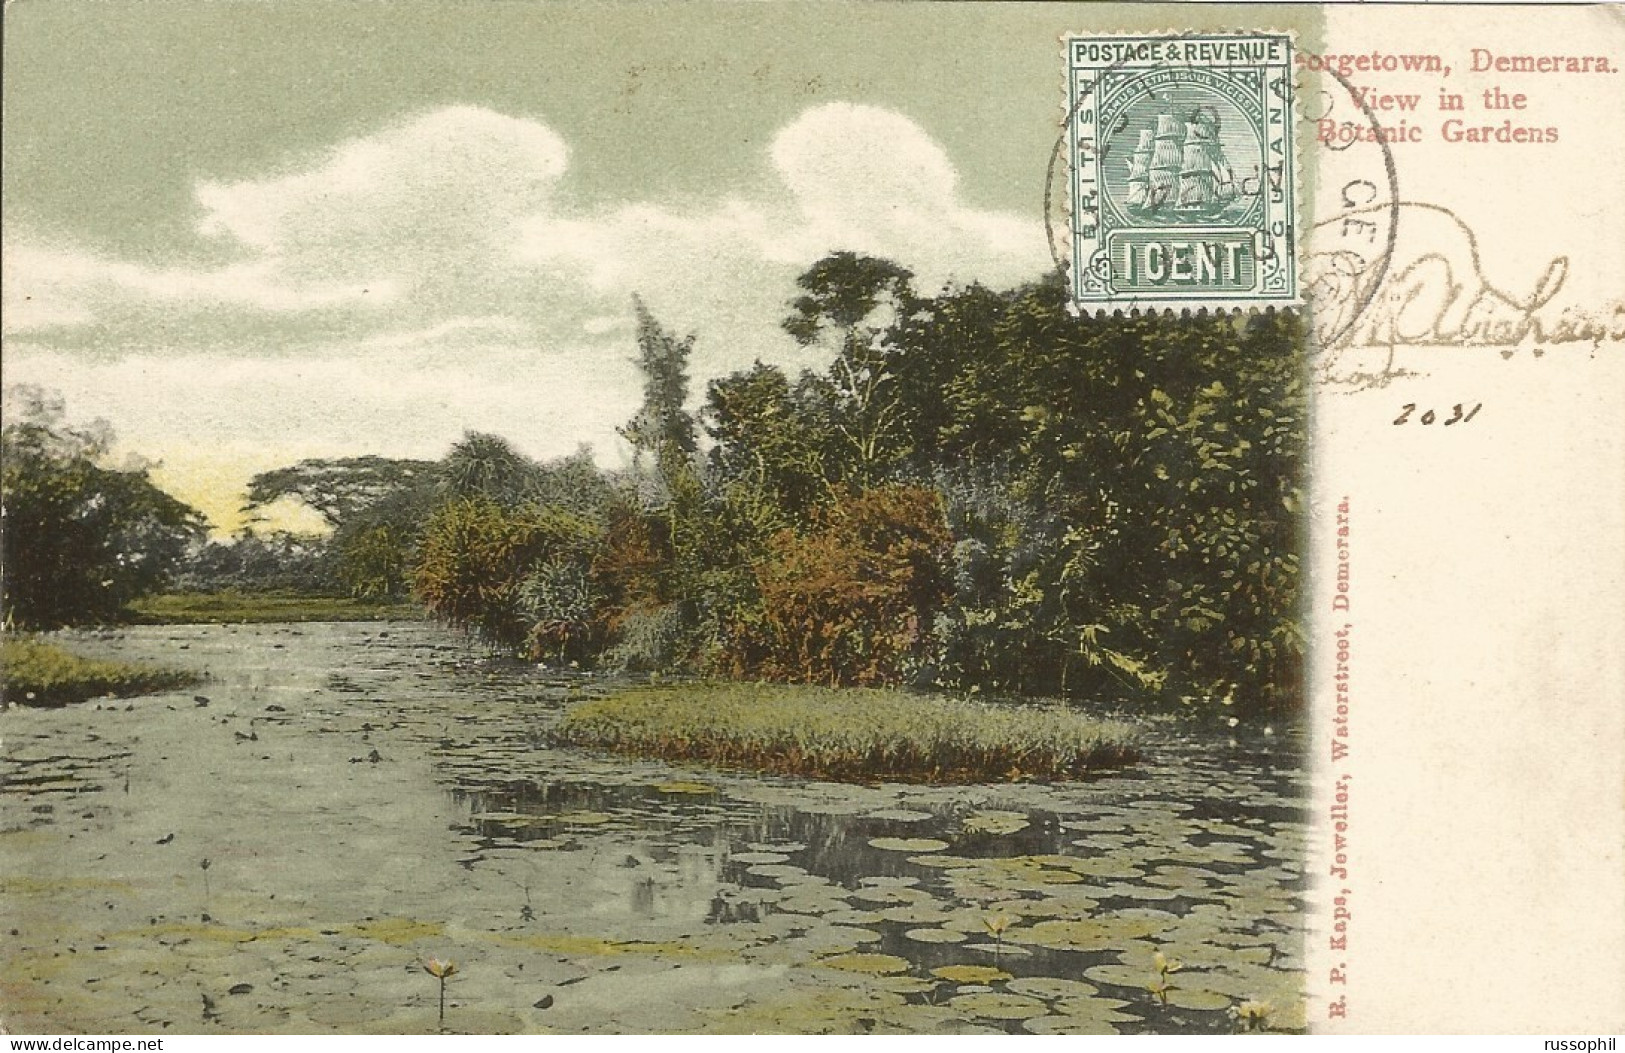 GUYANA - BRITISH GUYANA - GEORGETOWN, DEMERARA. VIEW IN THE BOTANIC GARDENS - ED. KAPS - 1906 - Guyana (formerly British Guyana)